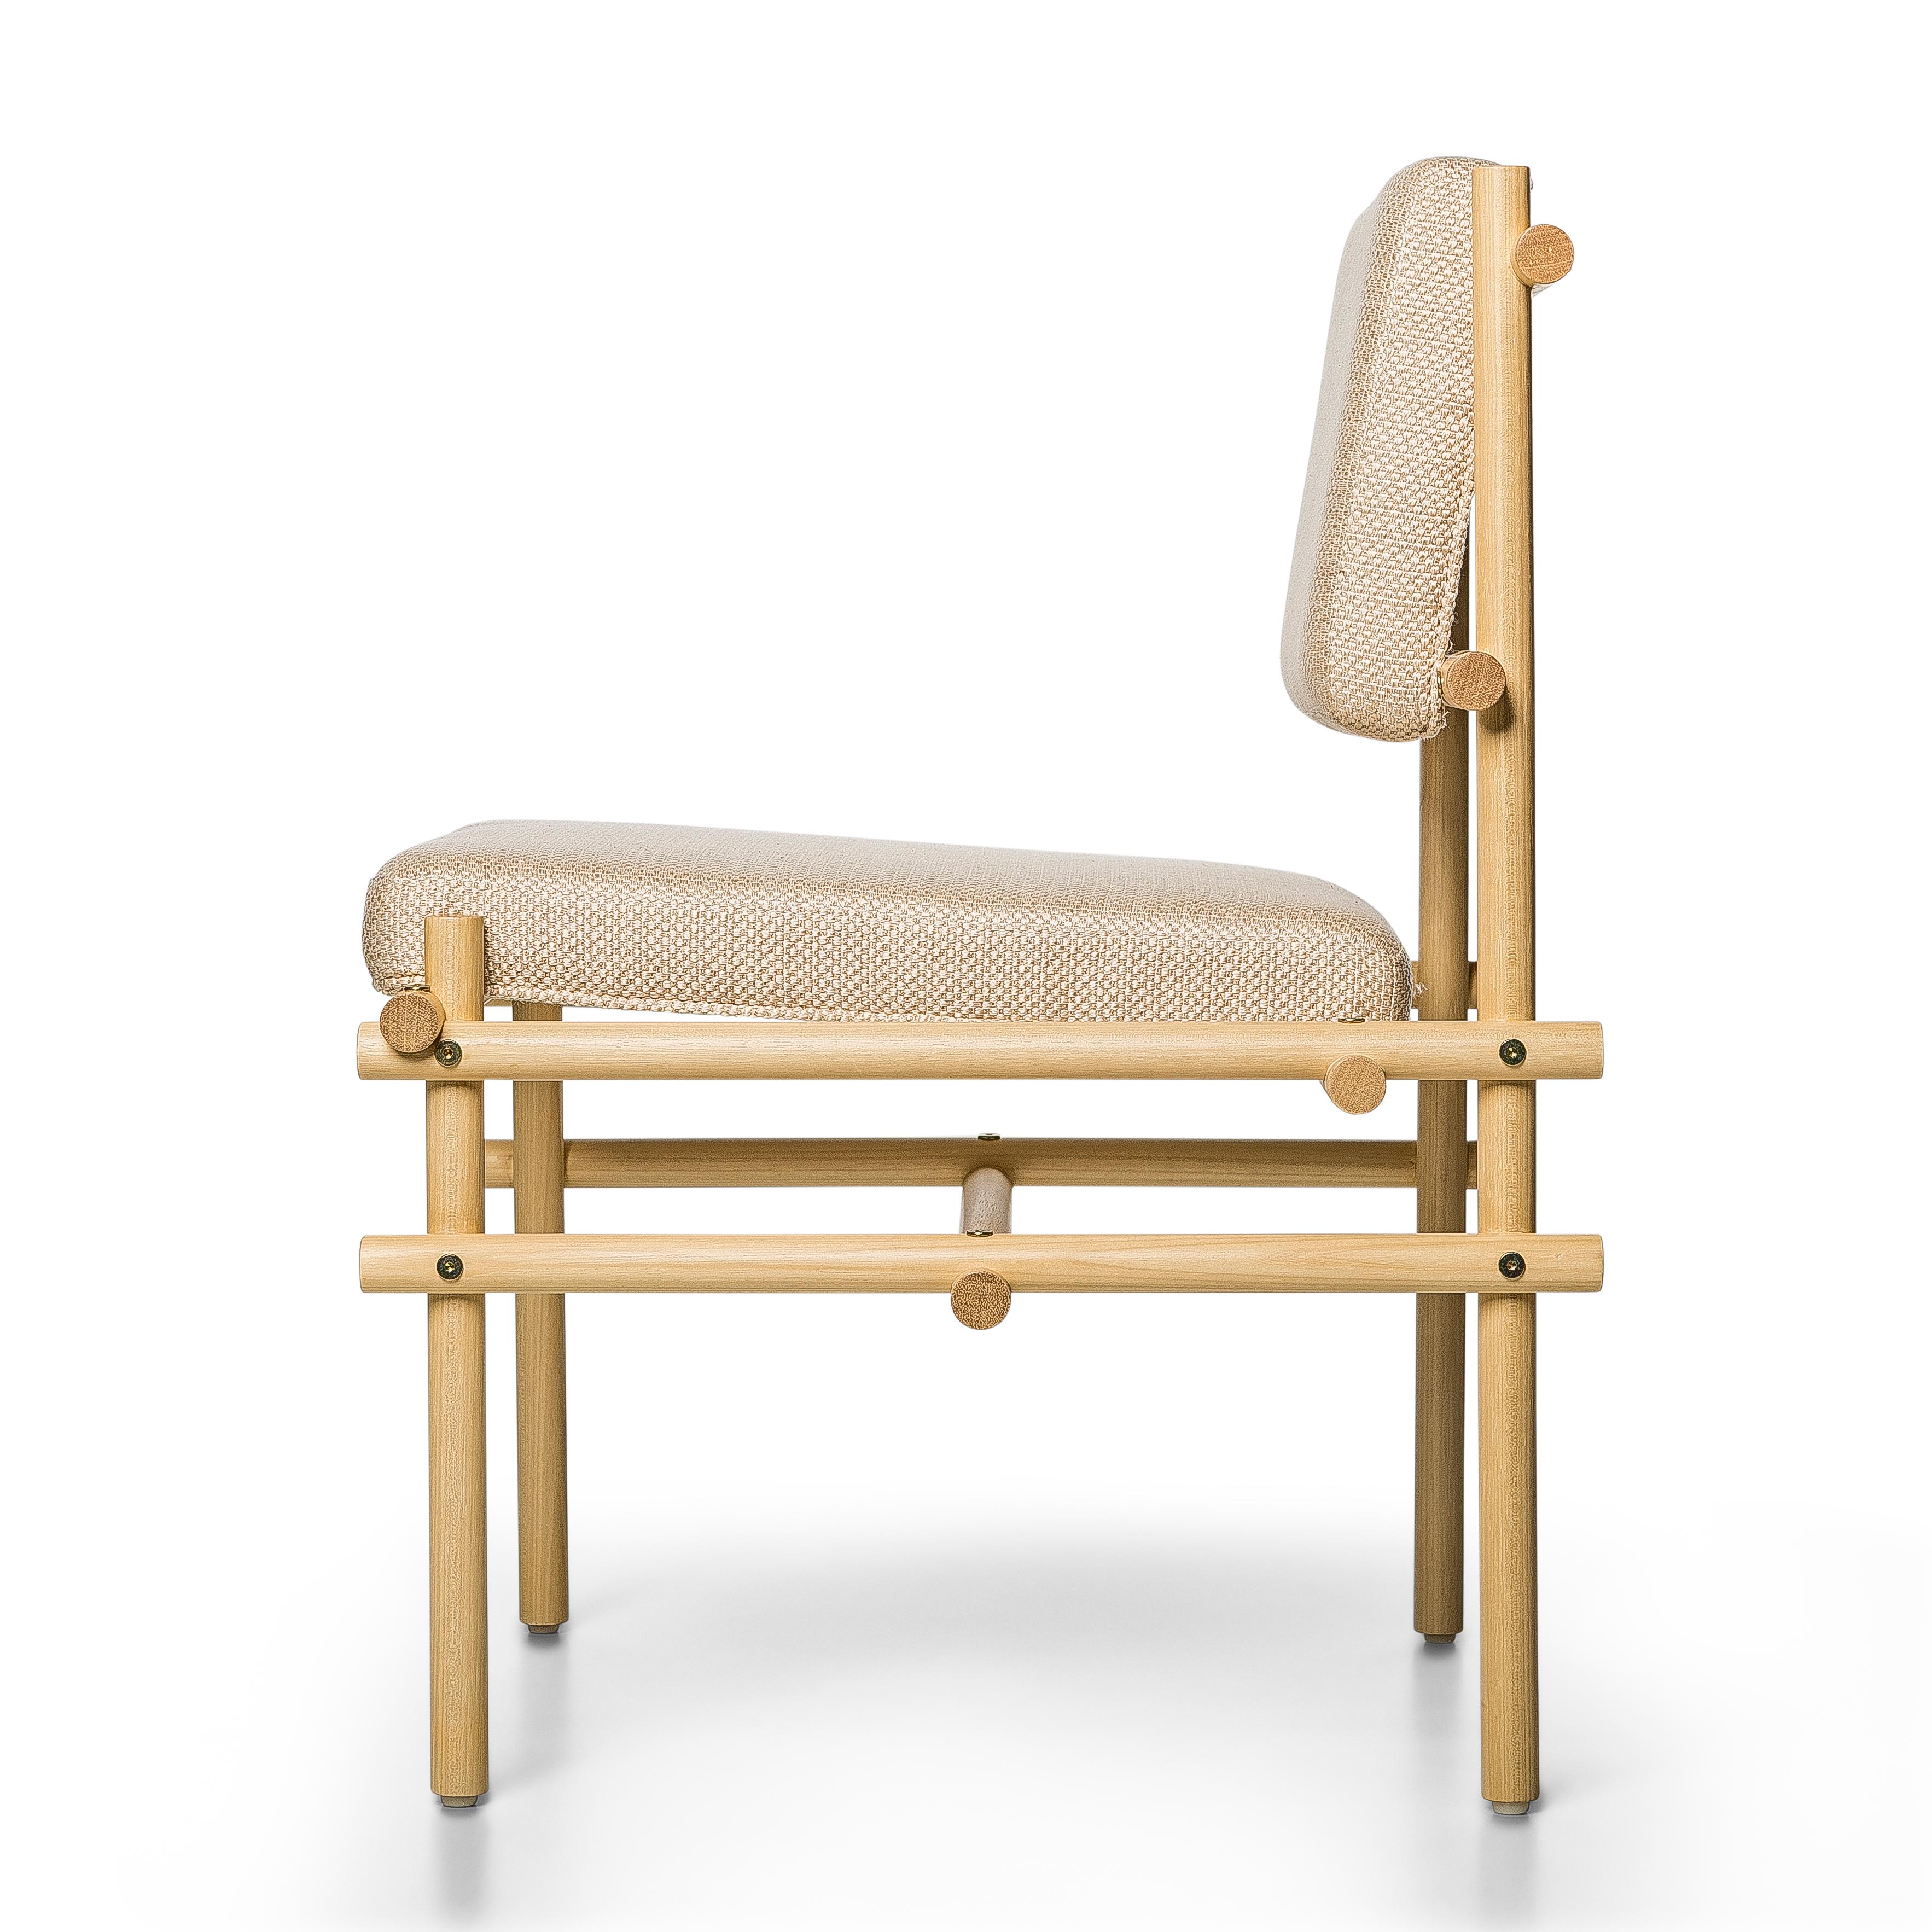 Développée sur la base des concepts de menuiserie traditionnelle brésilienne, la chaise Pipa est réalisée avec des tiges de Tauari, toutes de la même épaisseur, avec des inserts simples et des vis apparentes.

La chaise suggère un aspect naturel et